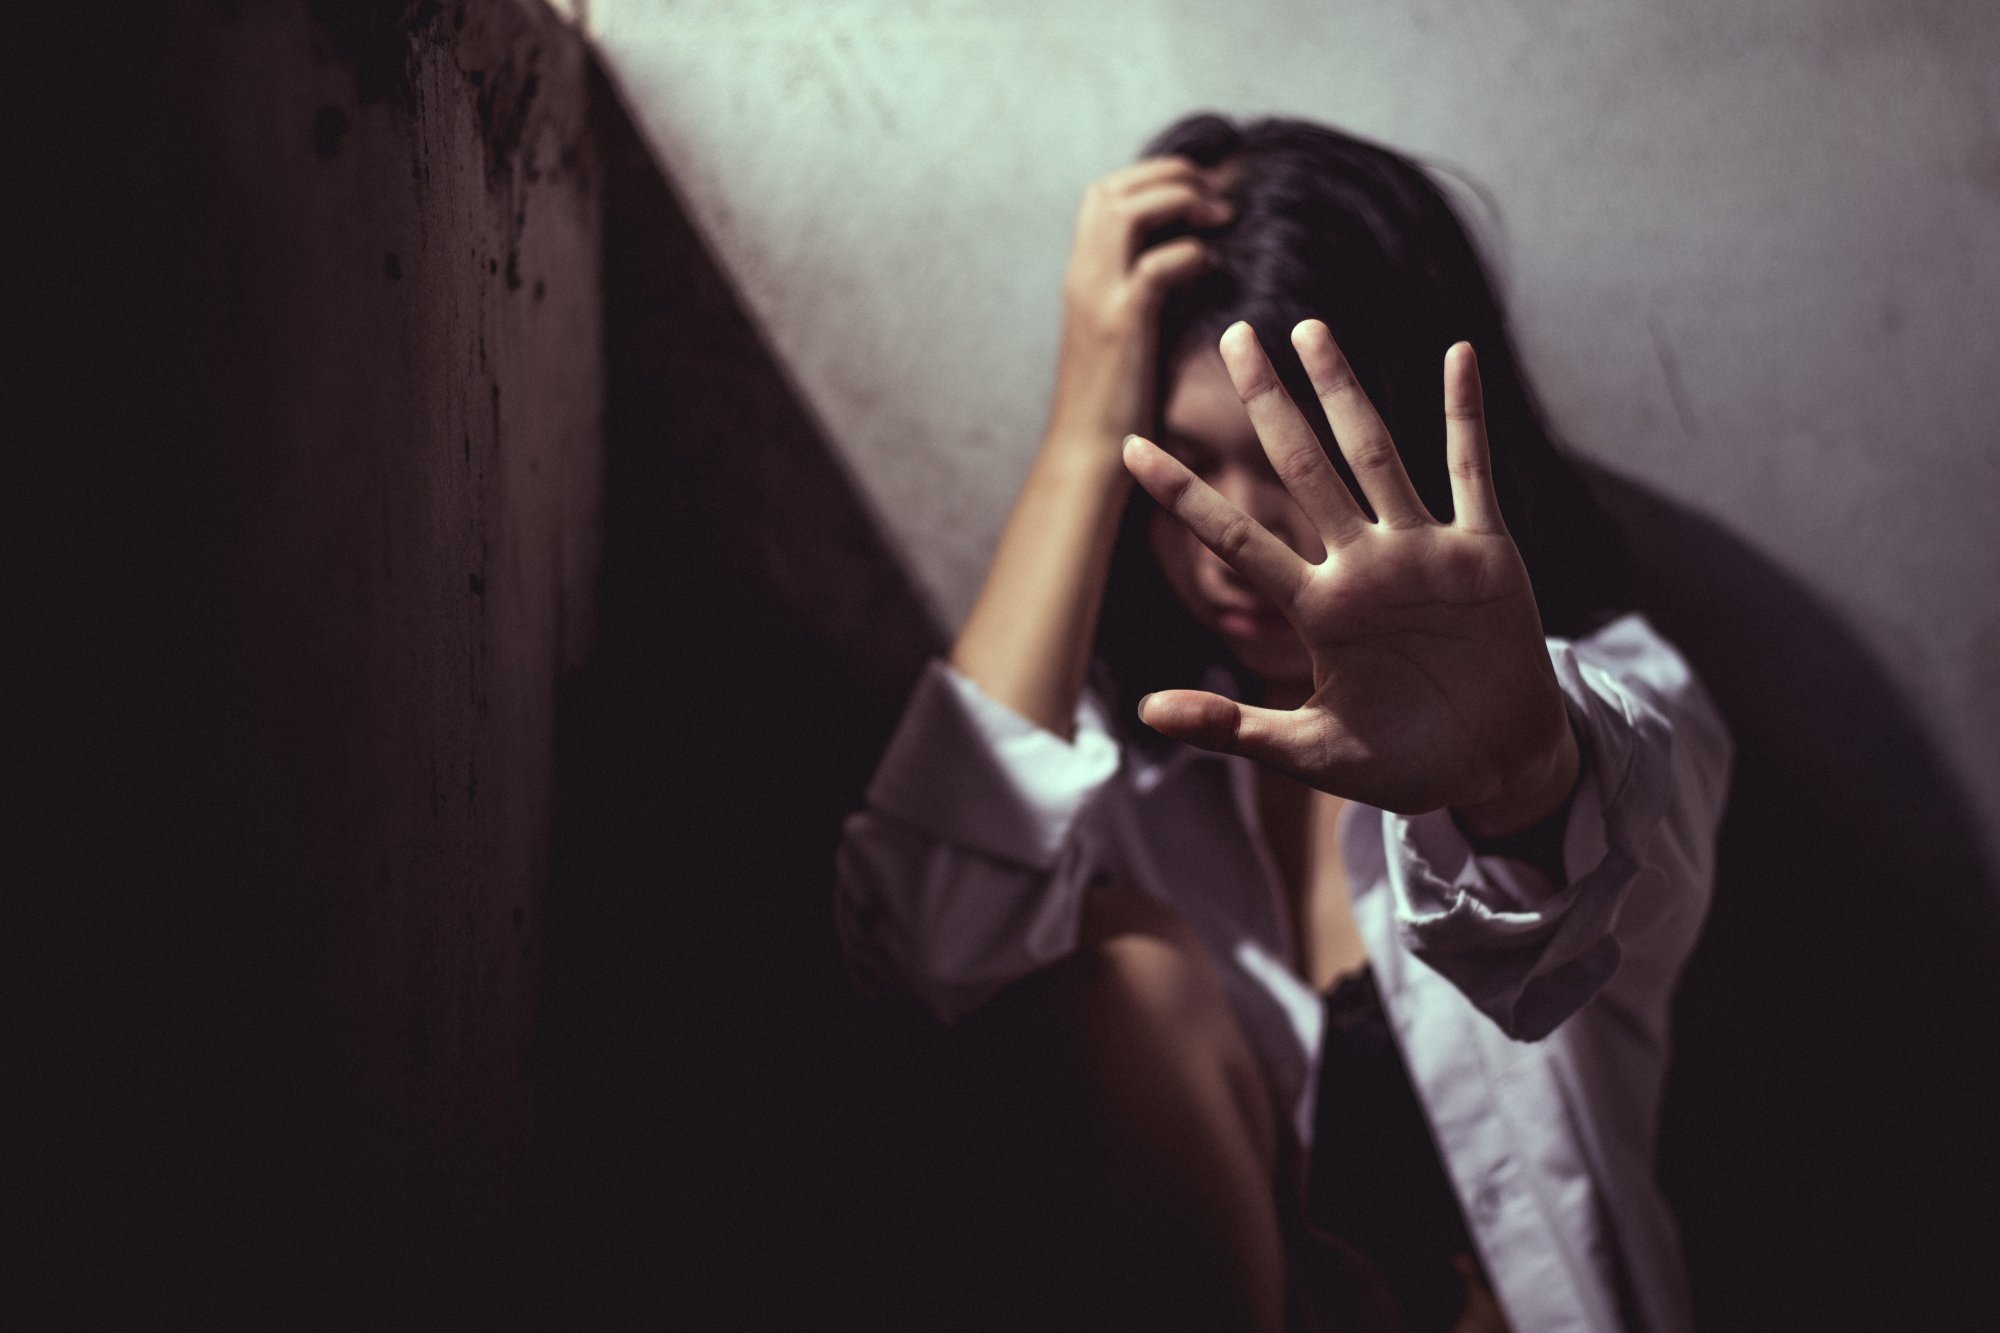 Νέα στοιχεία για τους βιασμούς της 14χρονης – «Ψάξτε στο κινητό» έγραψε πριν αυτοκτονήσει ο πατέρας της